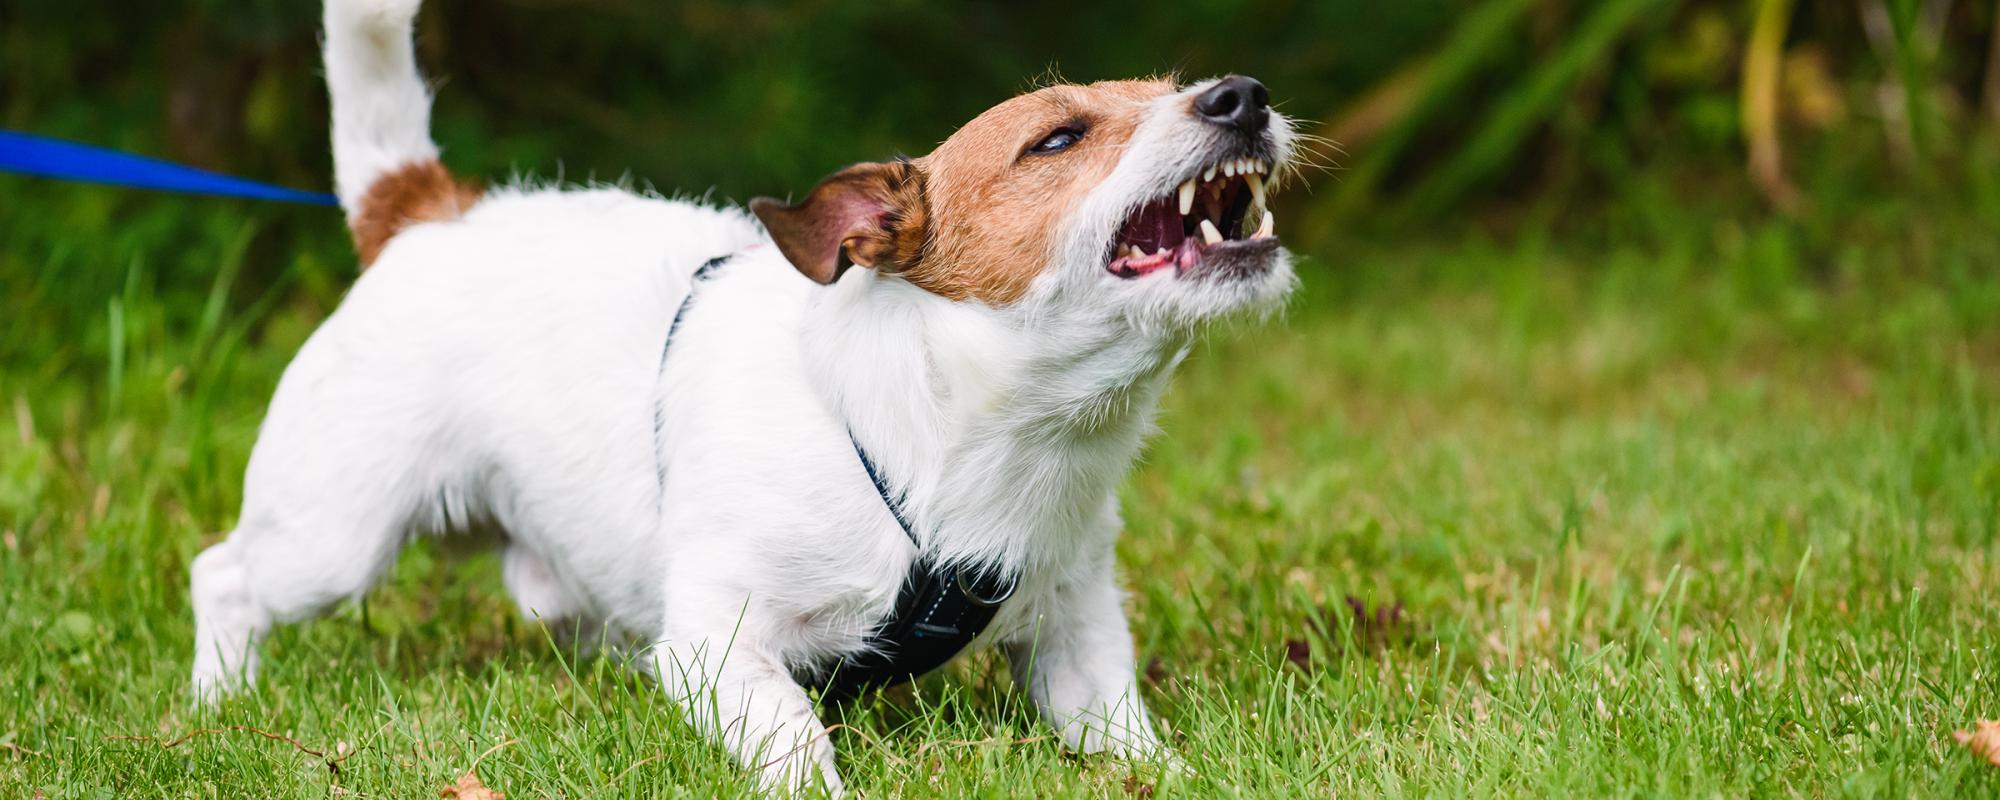 Schilddrüsenprobleme bei Hunden können zu Verhaltensstörungen führen